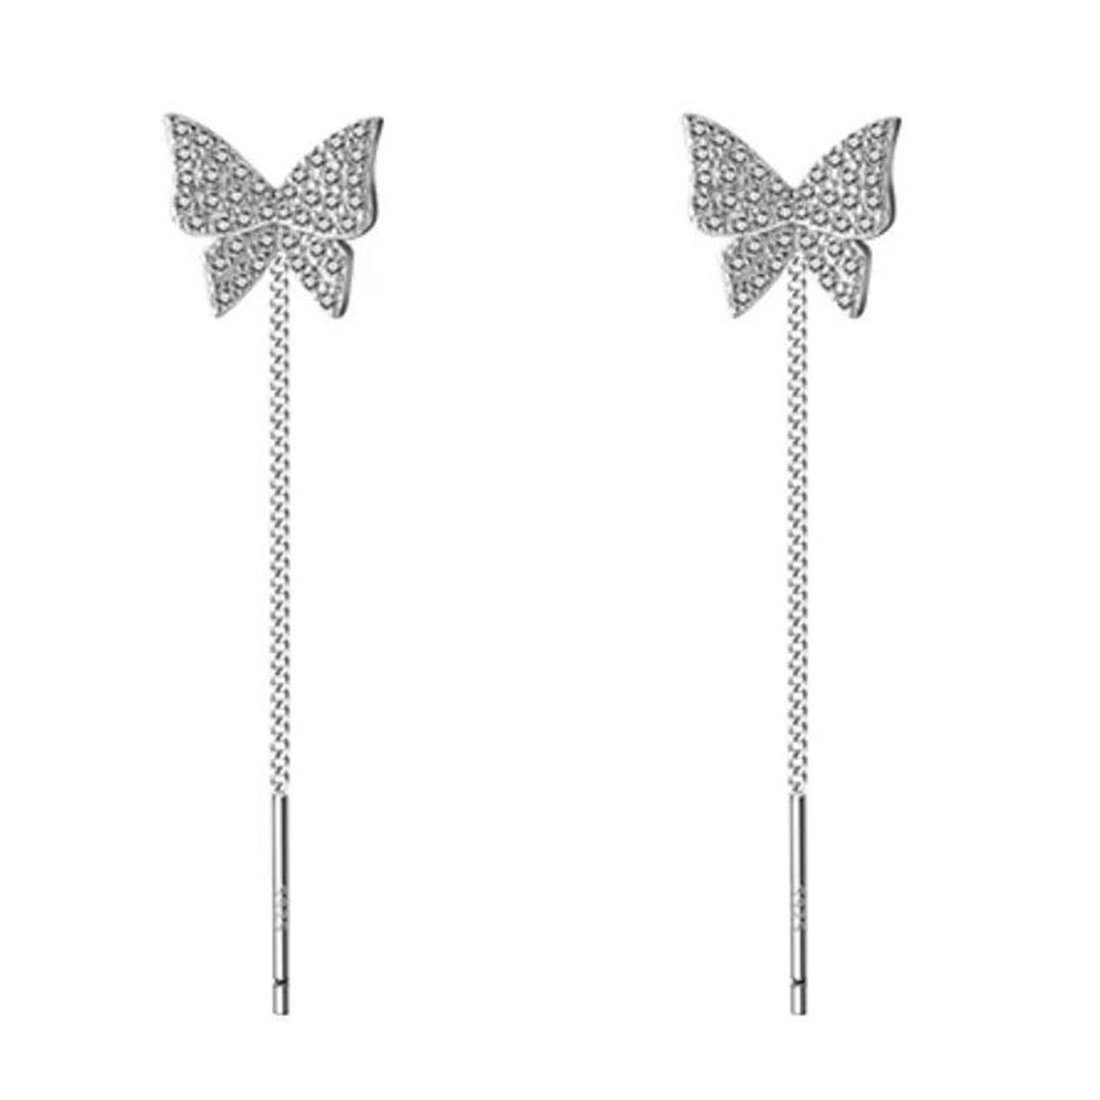 Haiaveng Paar Ohrhänger s999 Sterlingsilber Ohrringe für Damen,Lange Quasten-Ohrringe, Schmetterling Quaste Ohr Draht Ohrringe